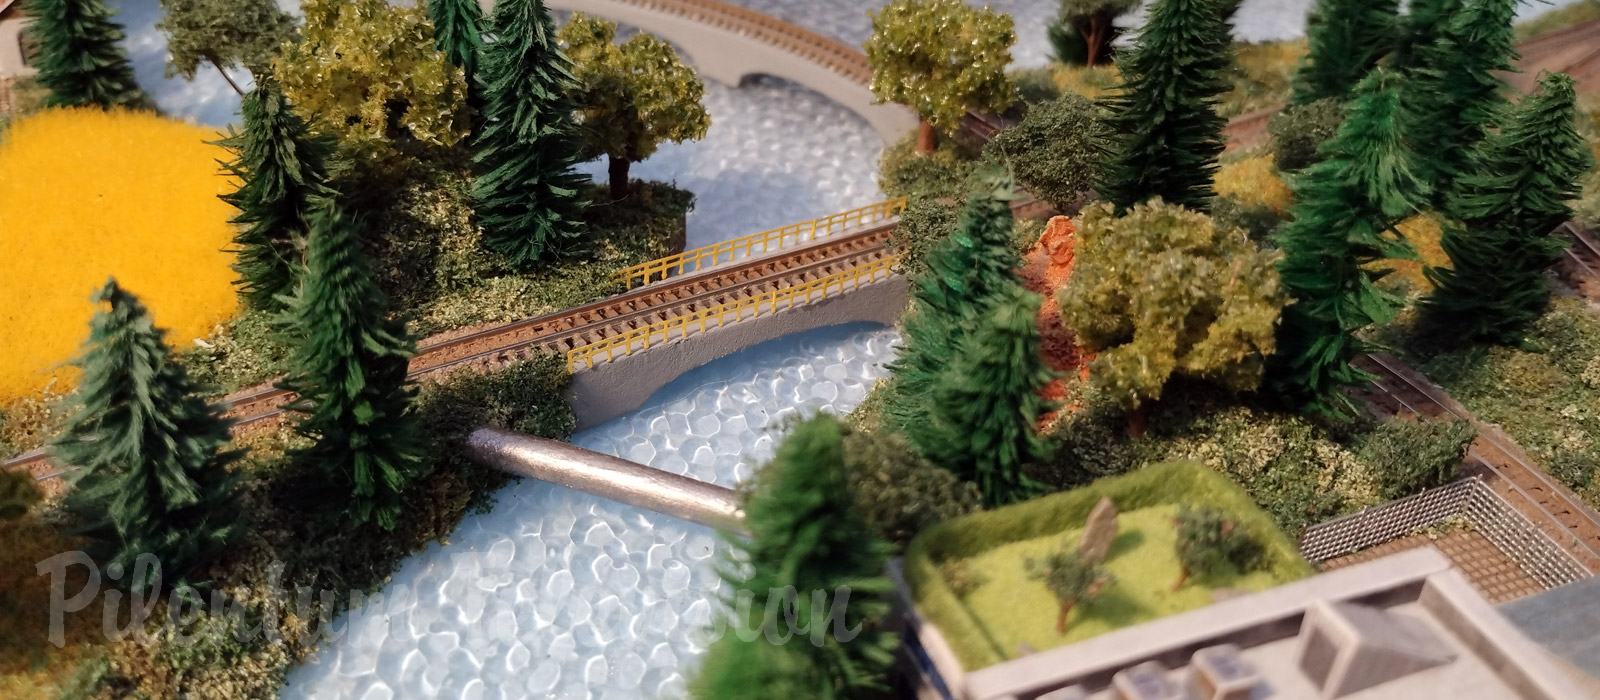 Uno dei più piccoli plastici ferroviari: Micro modelli e treni elettrici in scala 1/480 (T-Gauge)